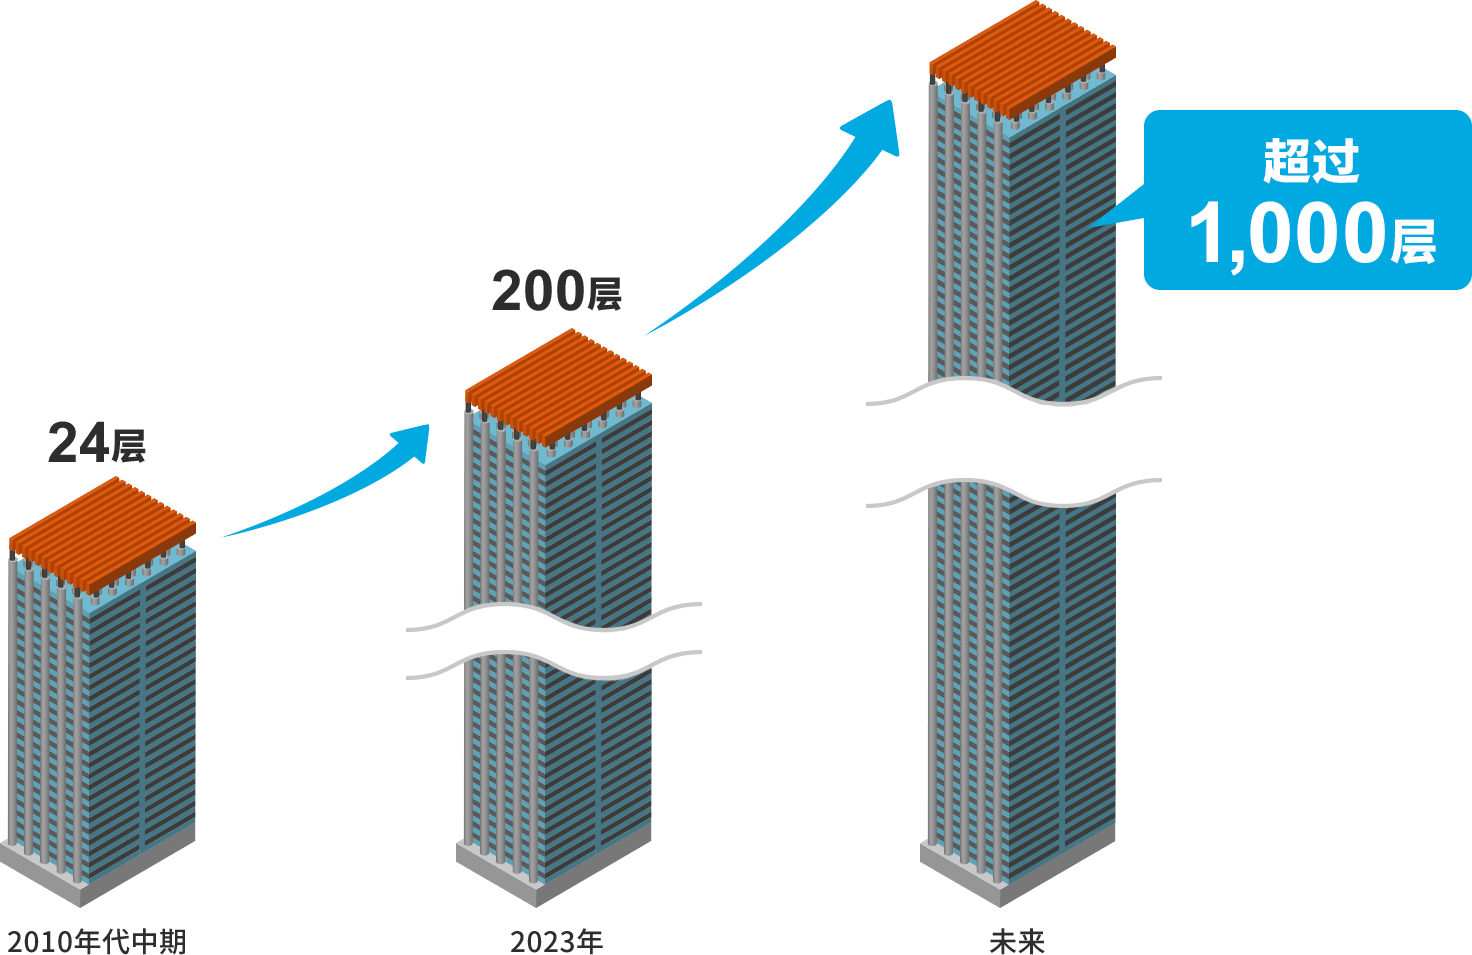 3D NAND堆叠技术的创新趋势图。先进3D NAND芯片在2010年代中期达到24层，2023年200层，未来将超过1000层。